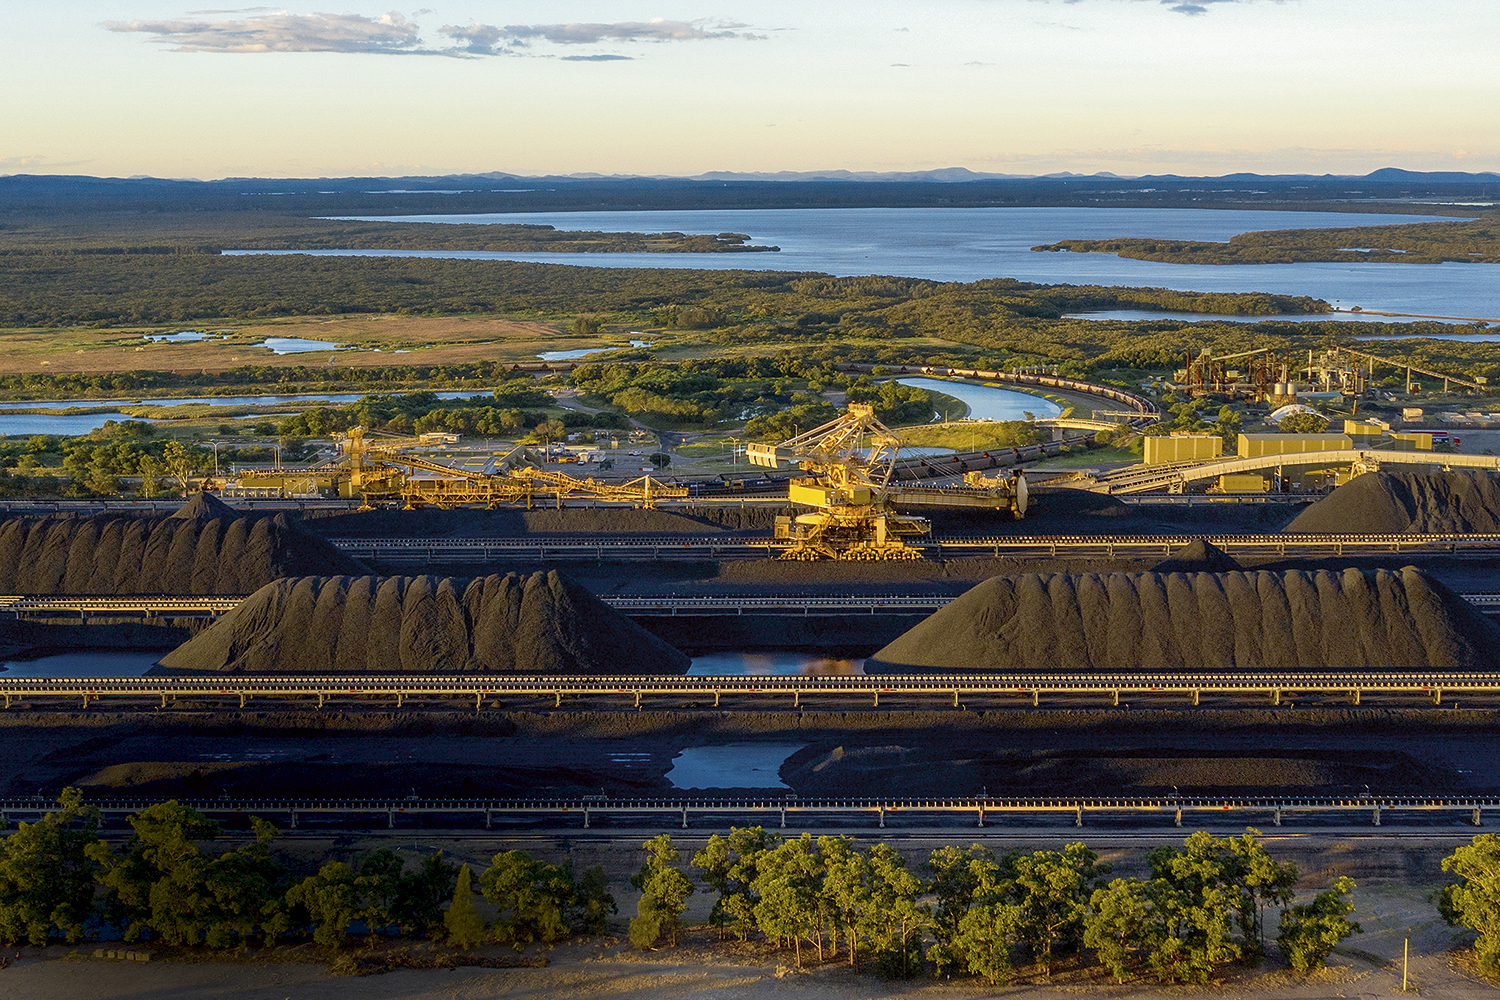 ENERGIA SUJA - Mina de carvão na Austrália: os interesses econômicos podem prejudicar acordos mais amplos -